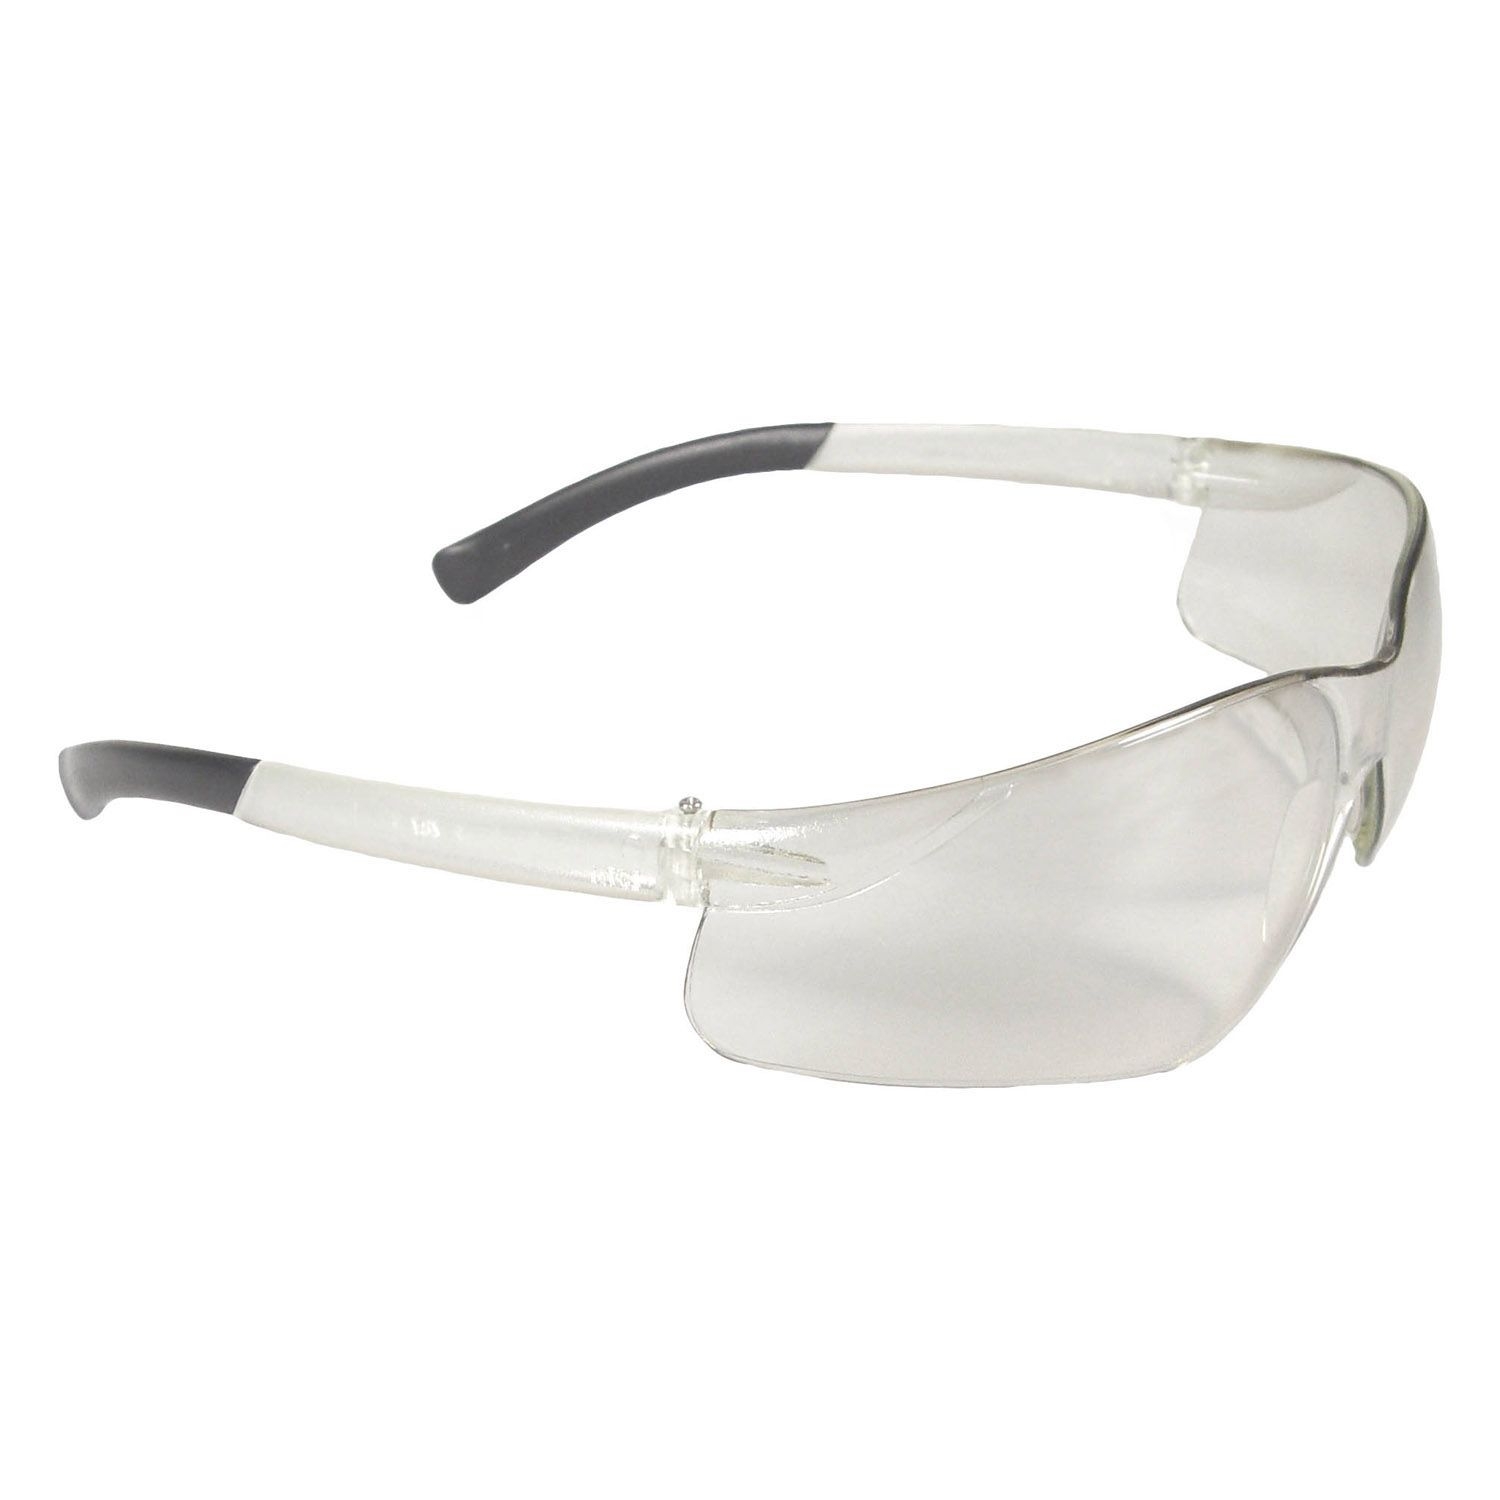 Хантер очки. Очки защитные ВИЗИОН. Спортивные очки прозрачные. Очки защитные стрелок. Полутемные очки.